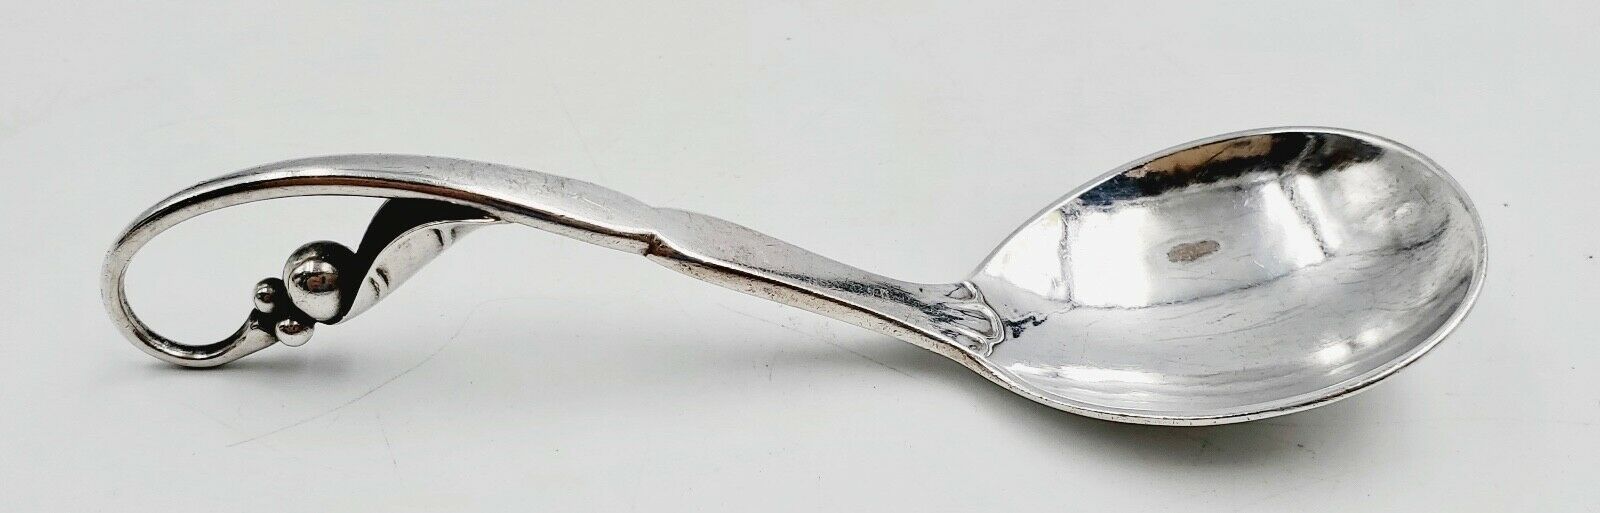 Georg Jensen Sterling Silver Flatware #21 Ornamental Pattern Small Spoon Ladle